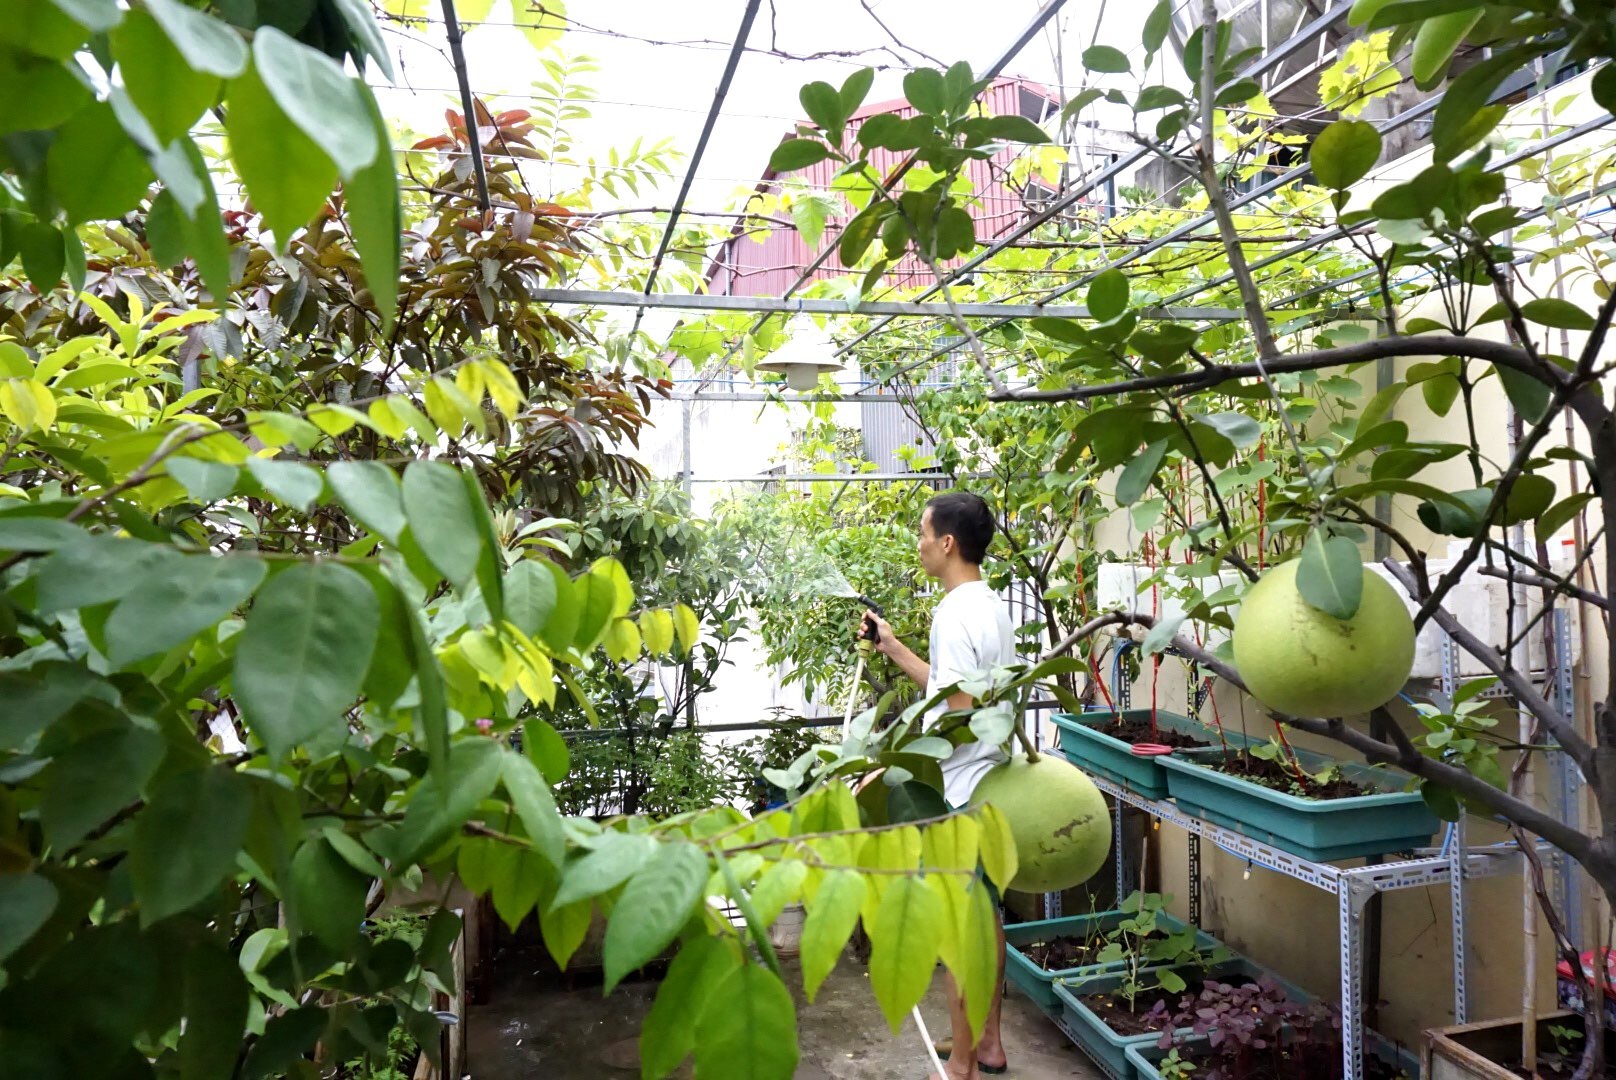 Vườn cây ăn quả trên sân thượng xanh tốt quanh năm của ông bố đảm Hà Nội - 2